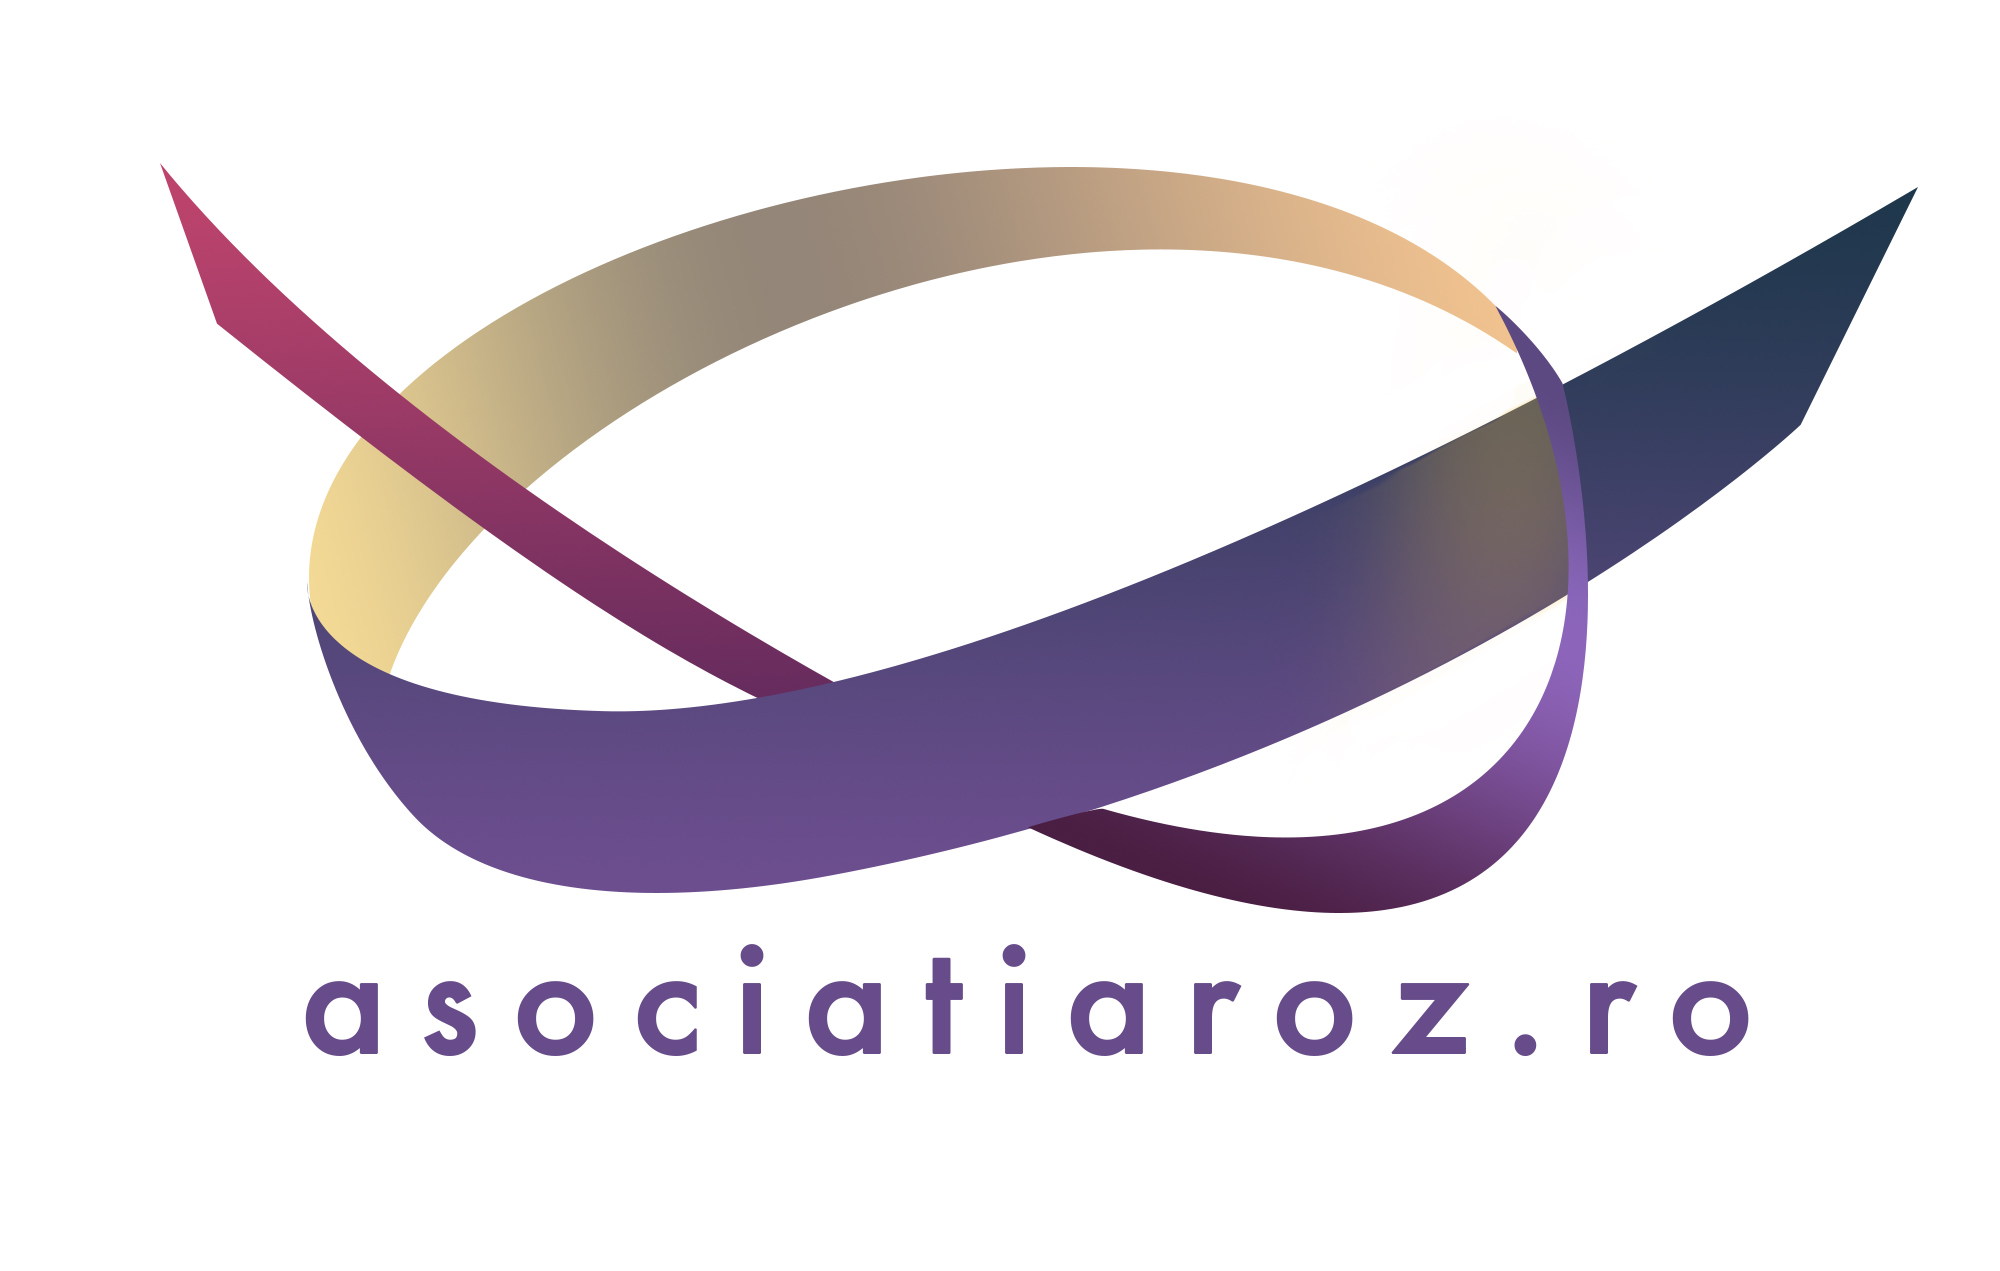 Asociatia R.O.Z. (Rabdare, Optimism, Zambet) logo